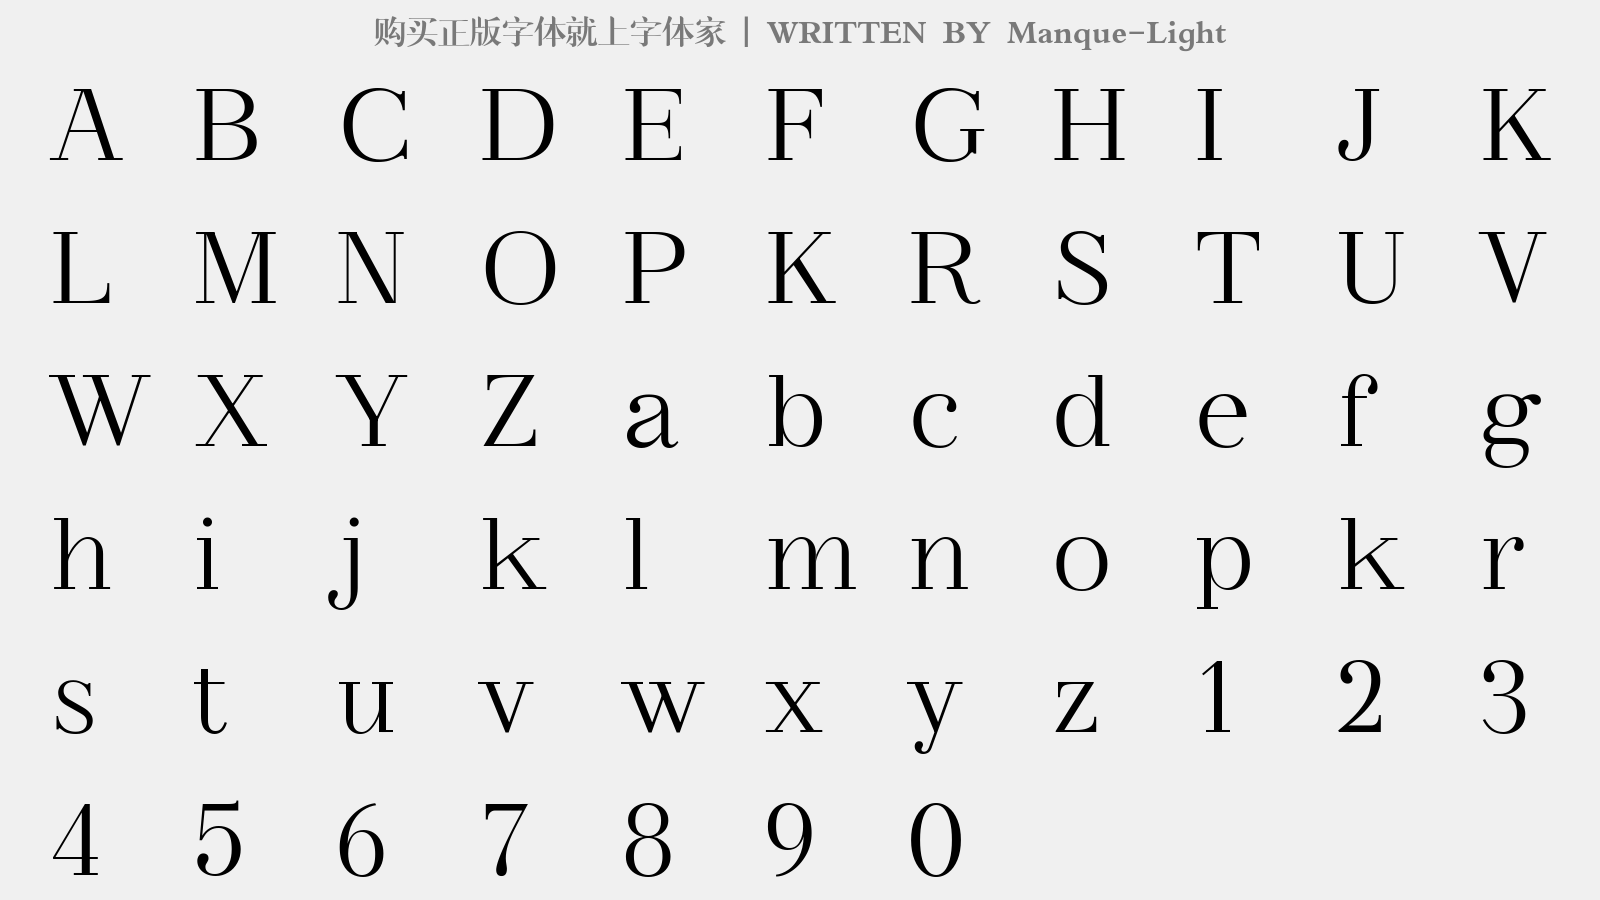 Manque-Light - 大写字母/小写字母/数字